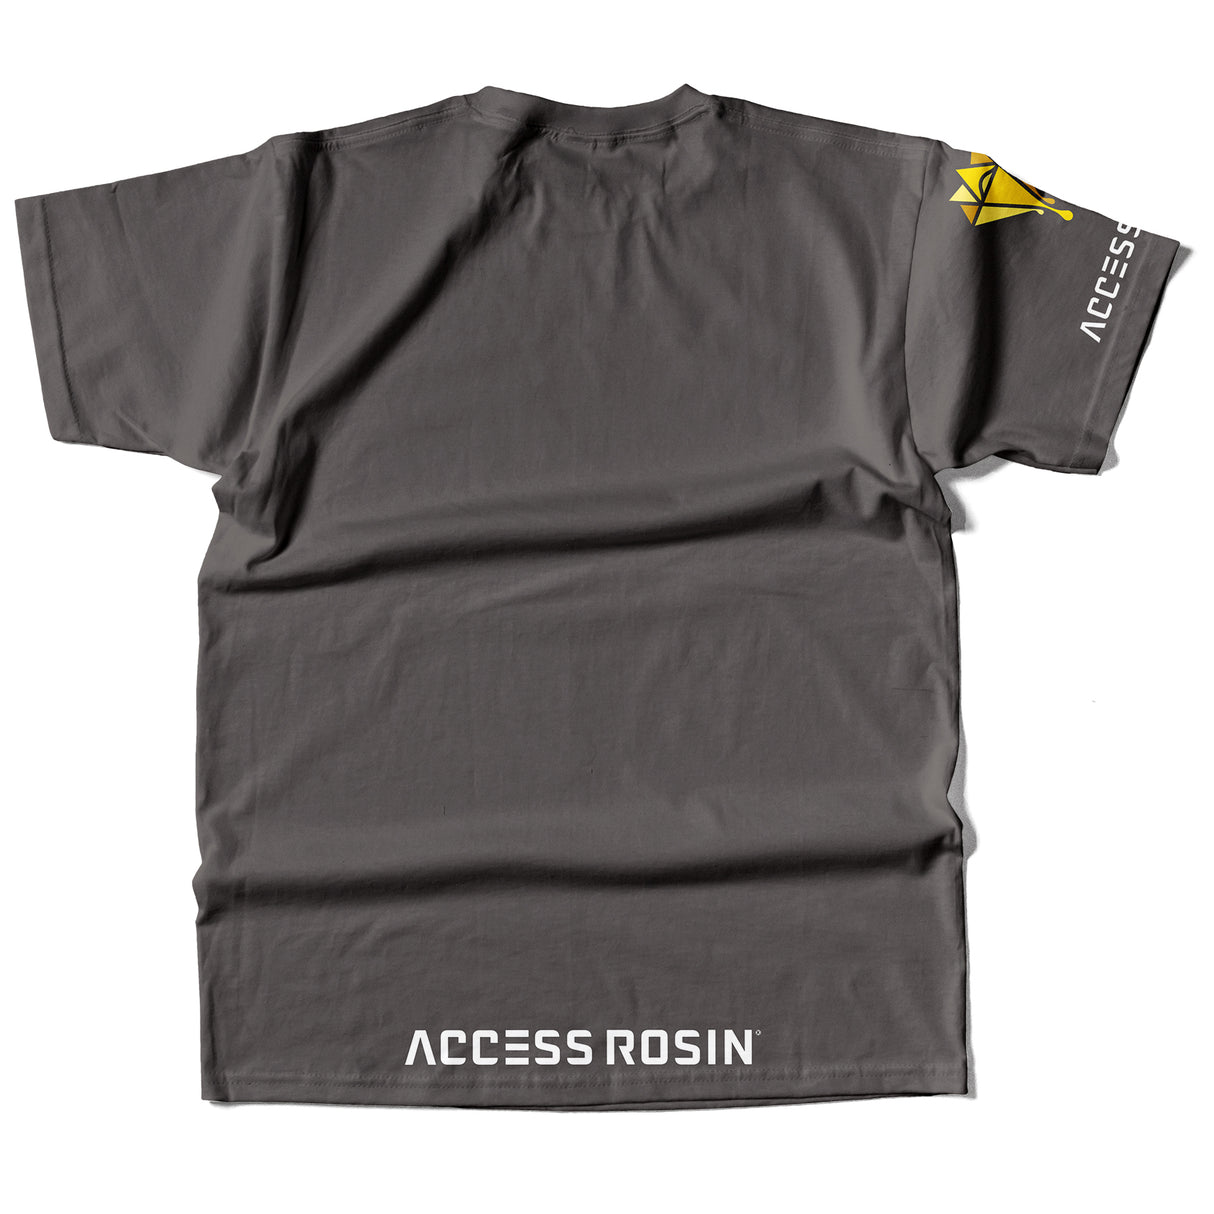 Press More Hash Rosin - Graphite - Access Rosin